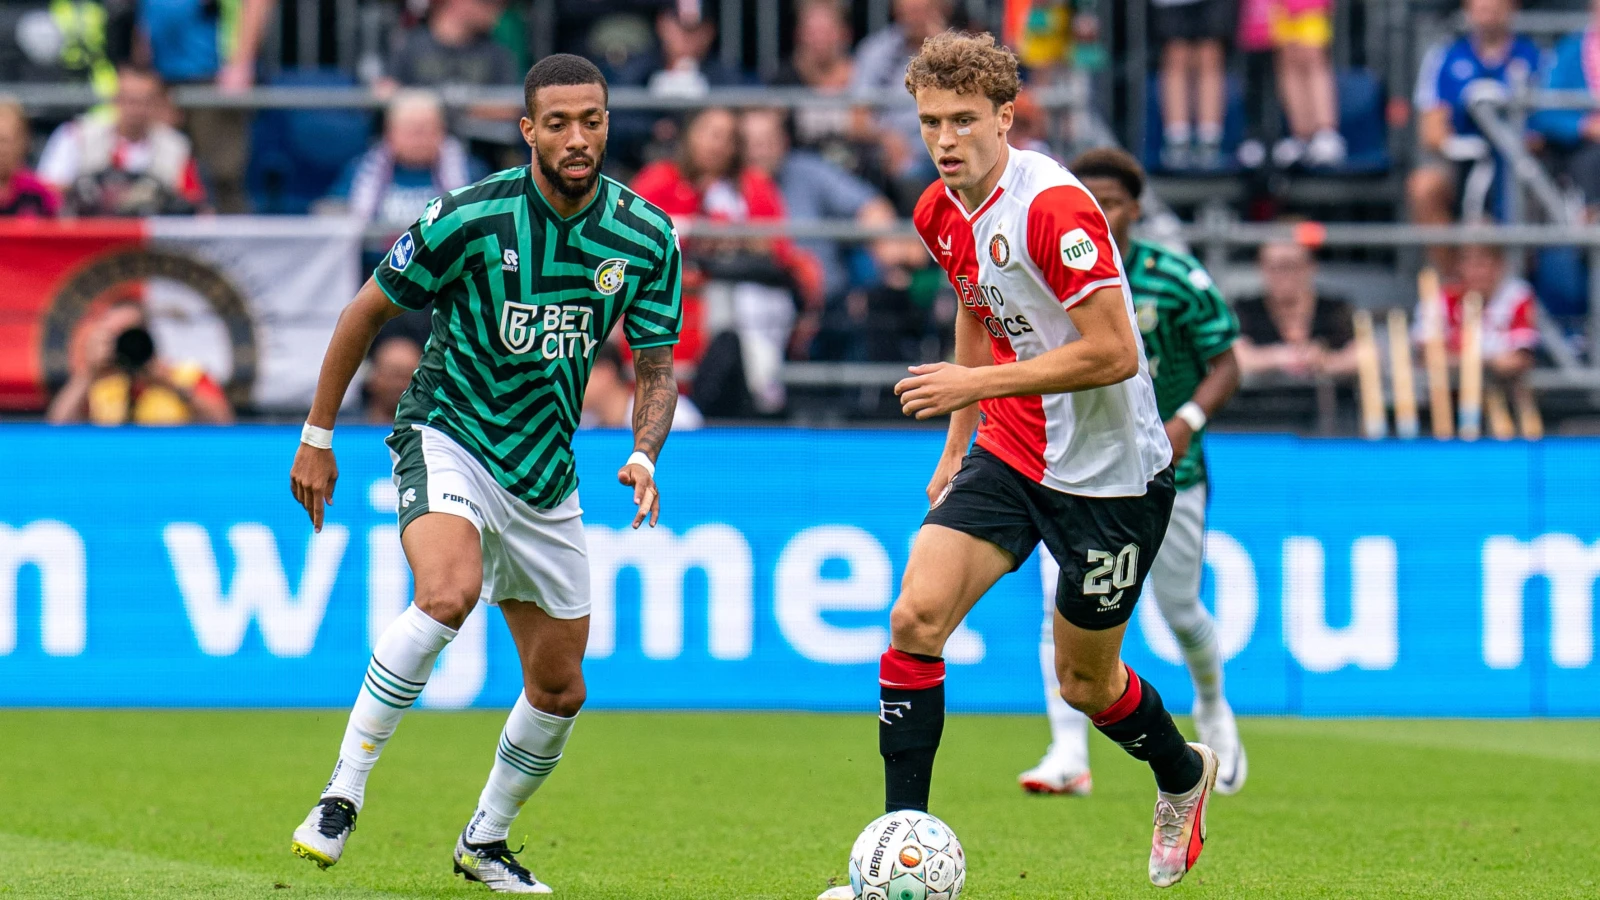 LIVE | Feyenoord - Fortuna Sittard 0-0 | Einde wedstrijd